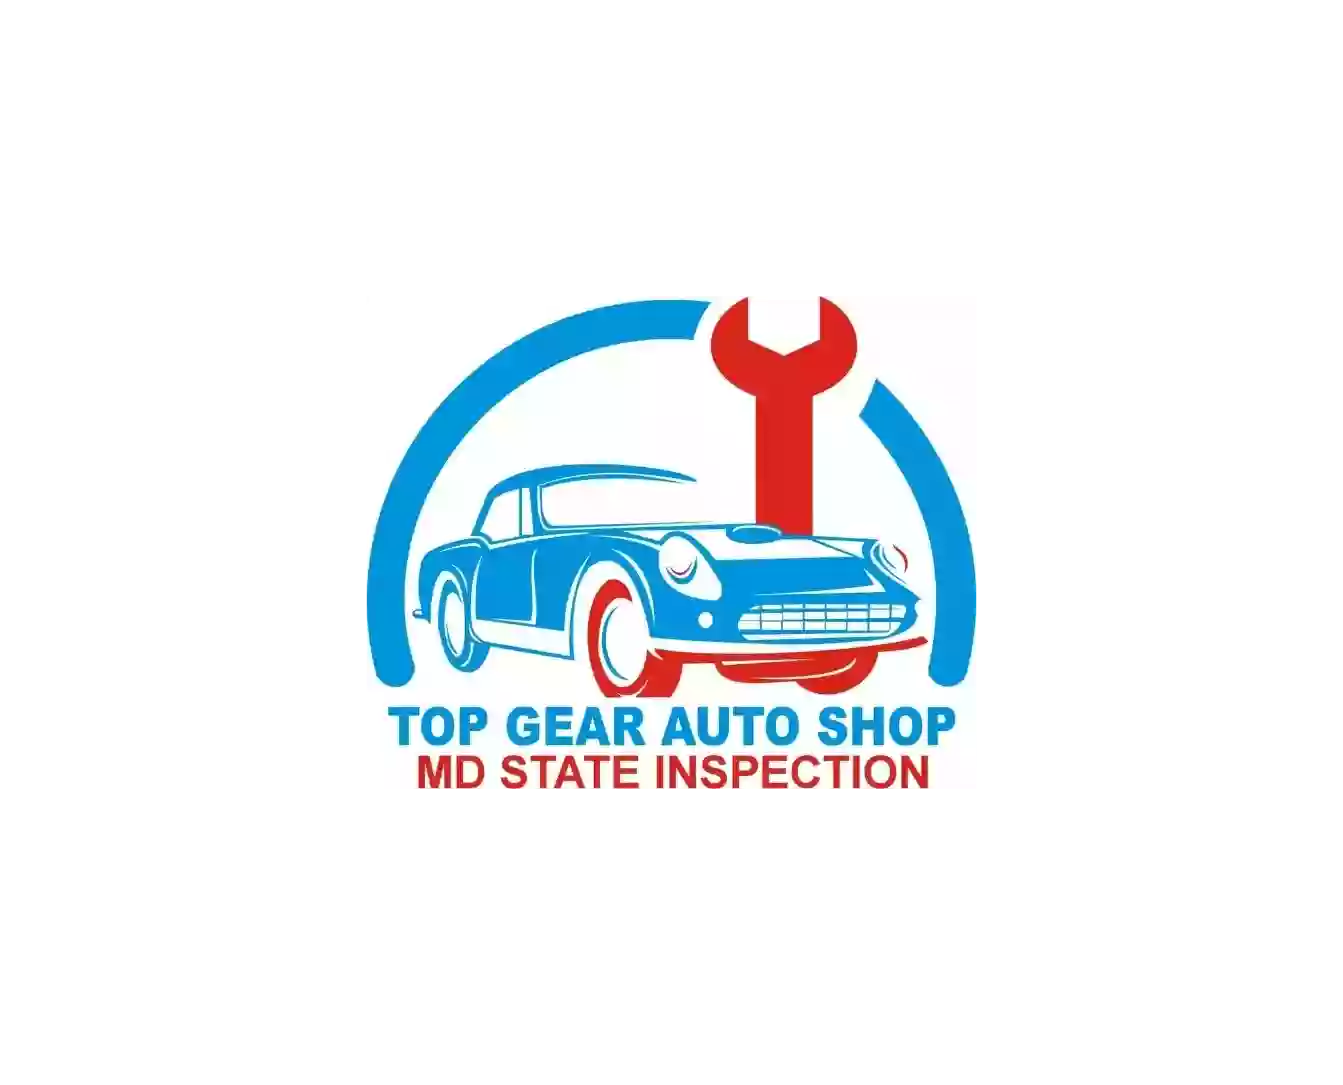 Top Gear Auto Shop